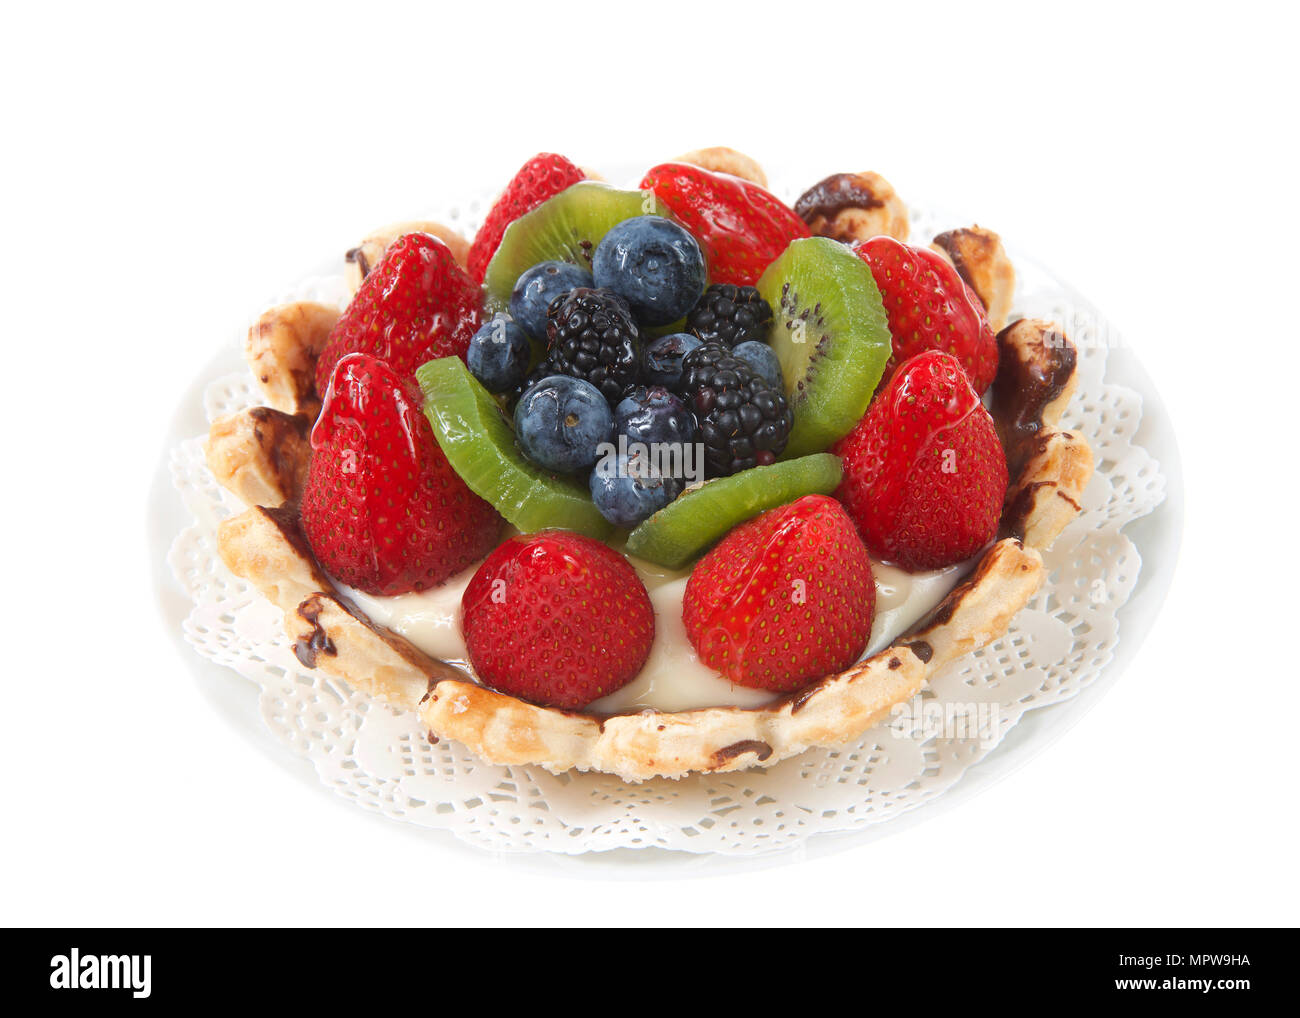 Tarte aux fruits d'été frais avec des fraises, kiwis, myrtilles, boysenberries sur un napperon blanc sur plaque isolé sur fond blanc. Banque D'Images